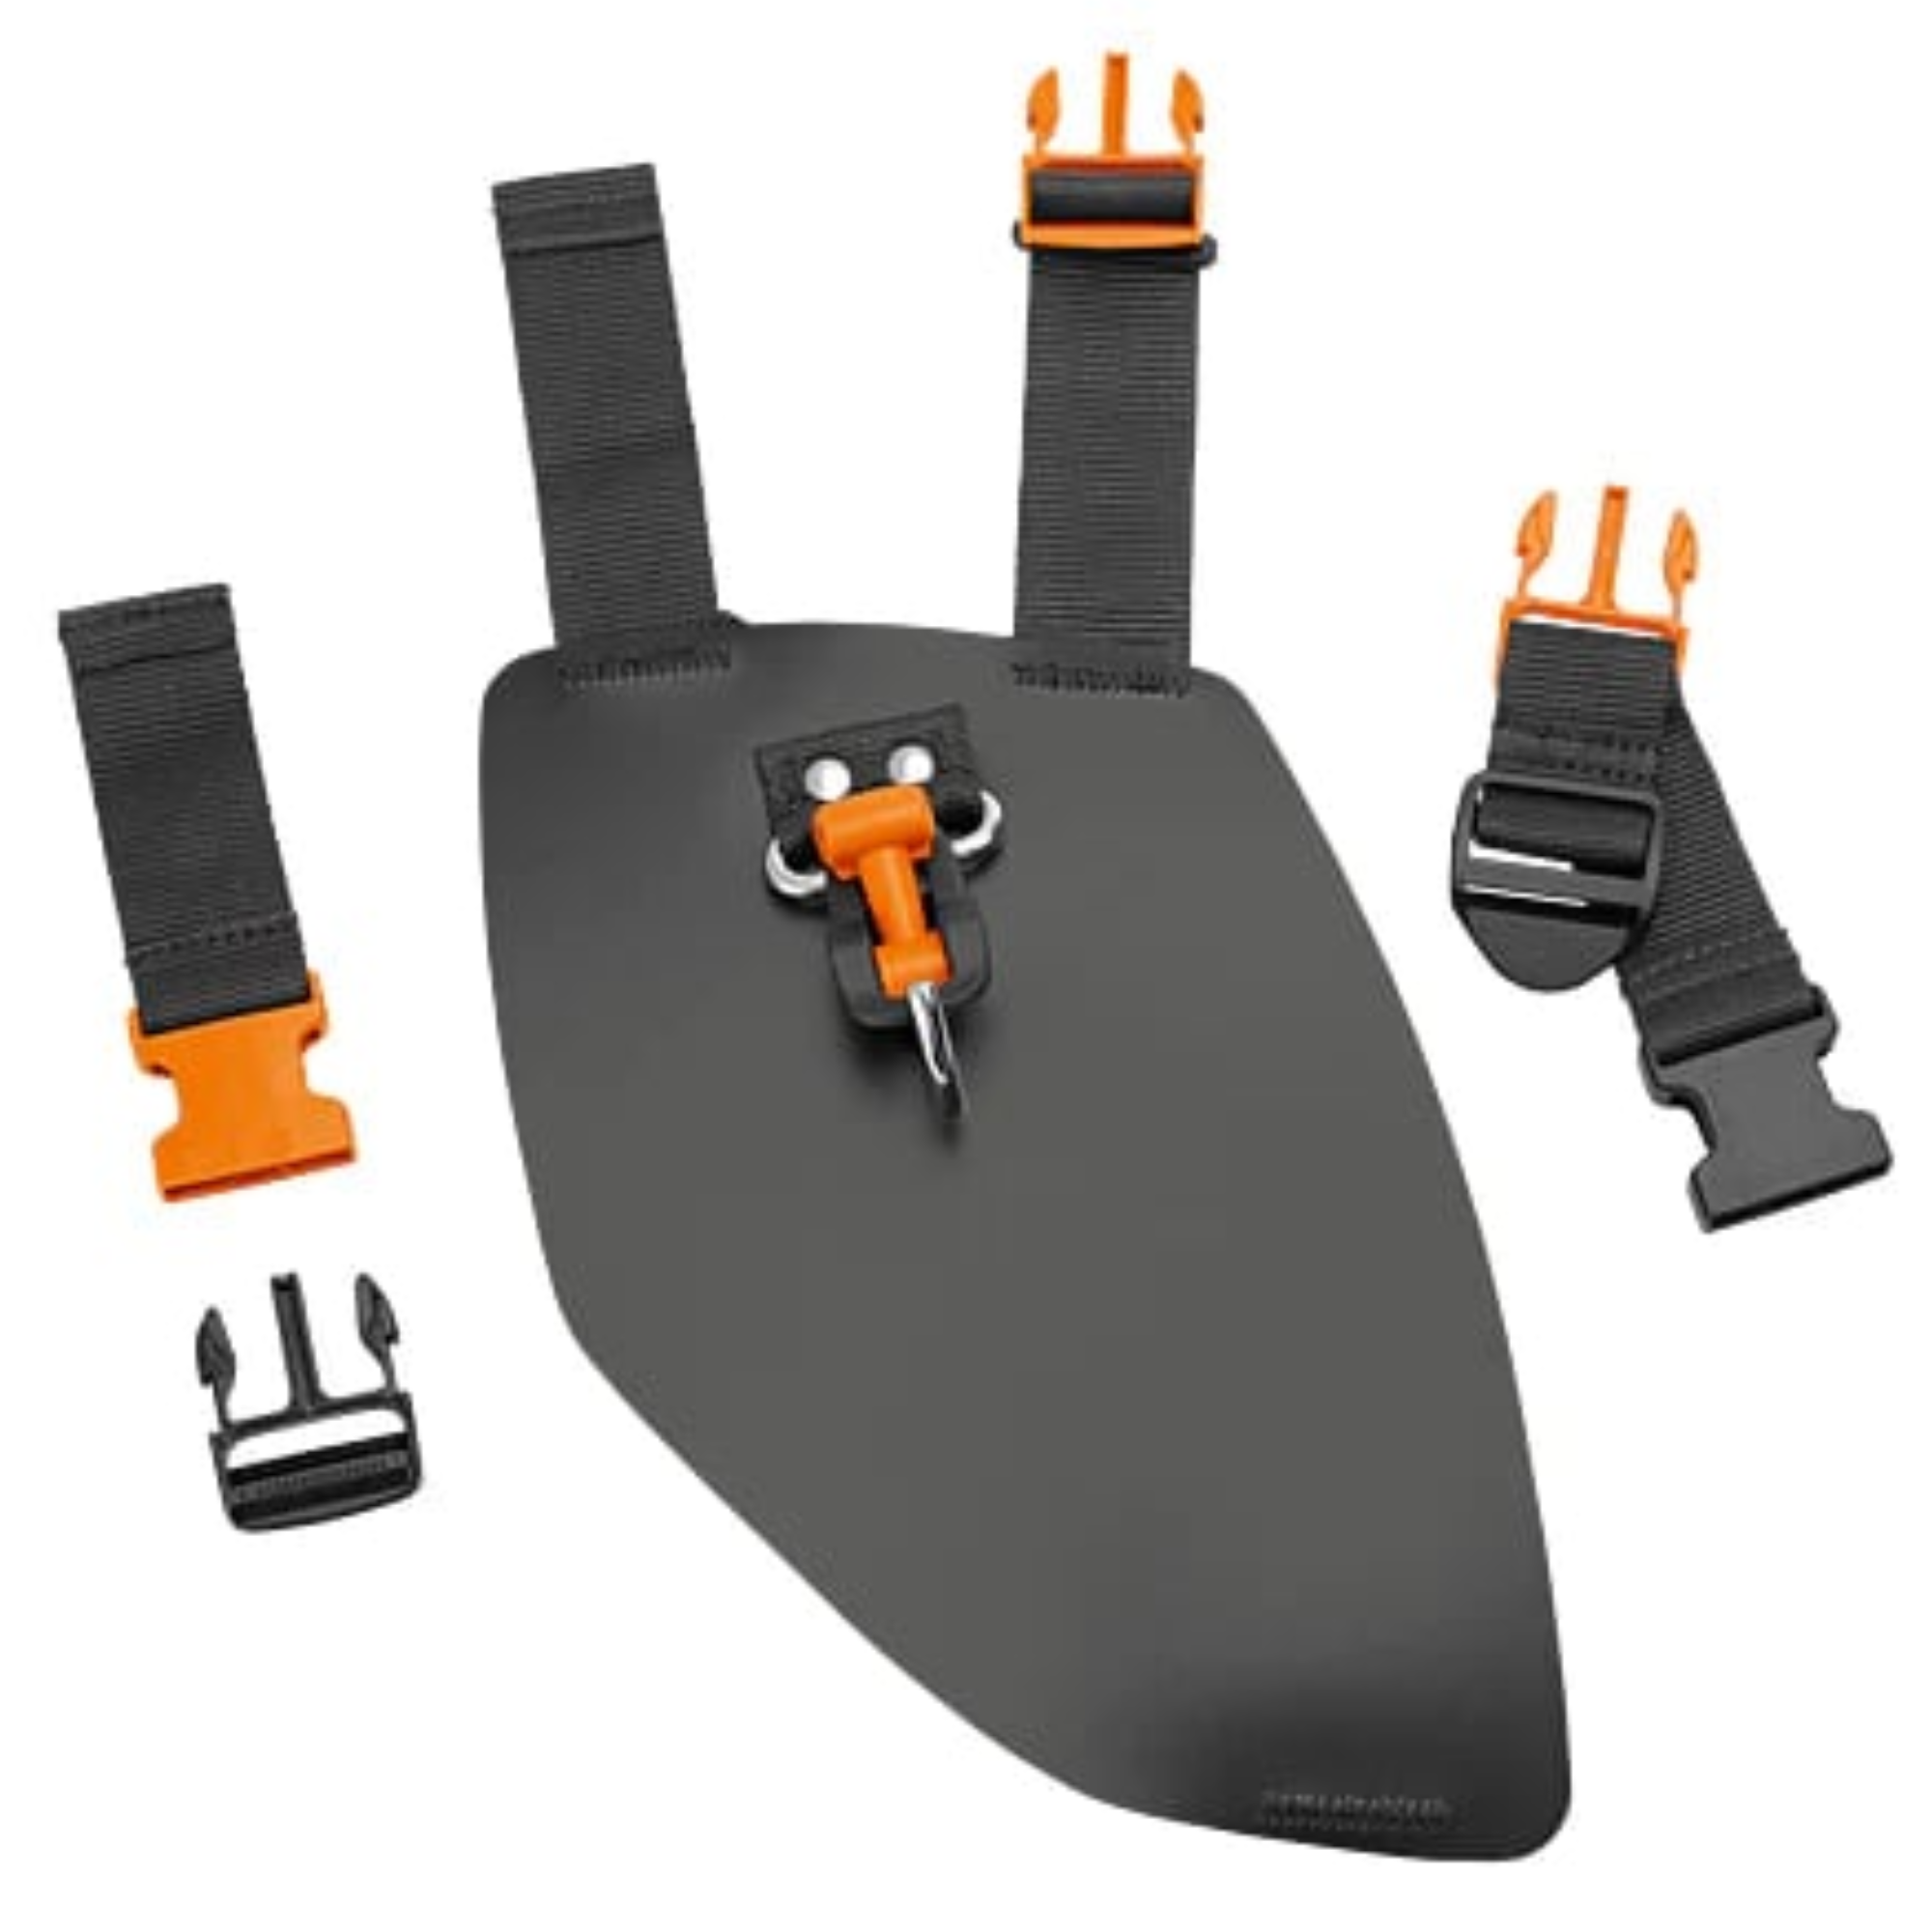 Stihl Harness Kit for KMA 130 R/ FSA 130 R | 0000 007 1045